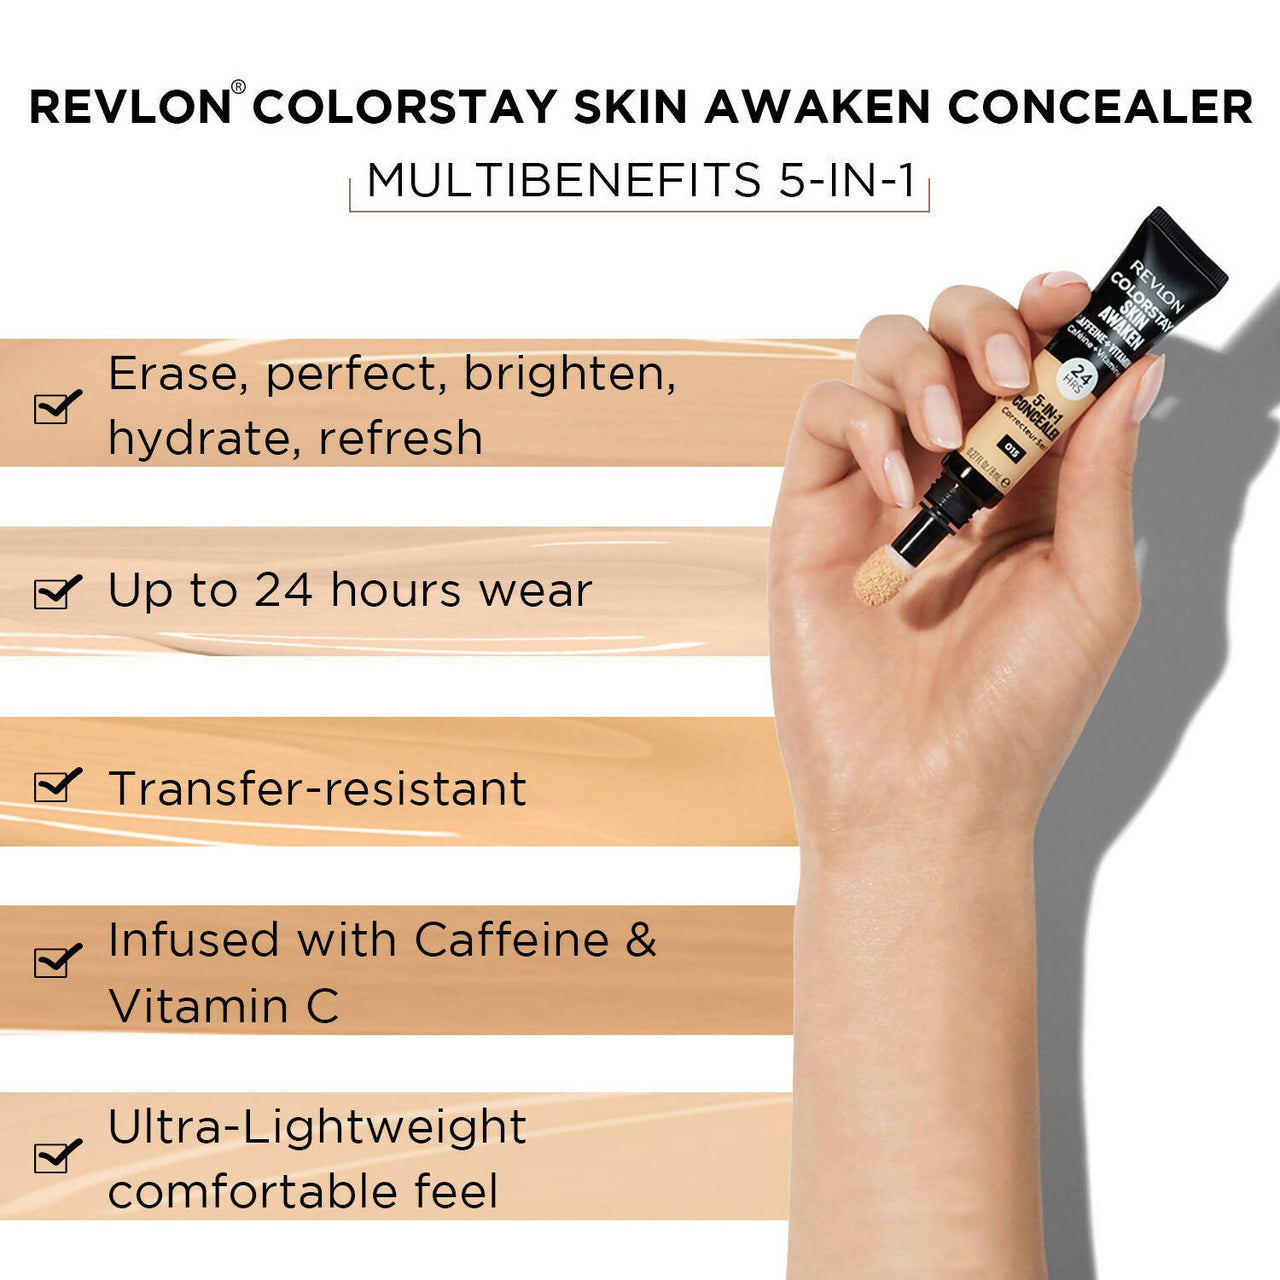 Revlon Colorstay Skin Awaken 5-in-1 Concealer - Universal Neutralizer - Distacart